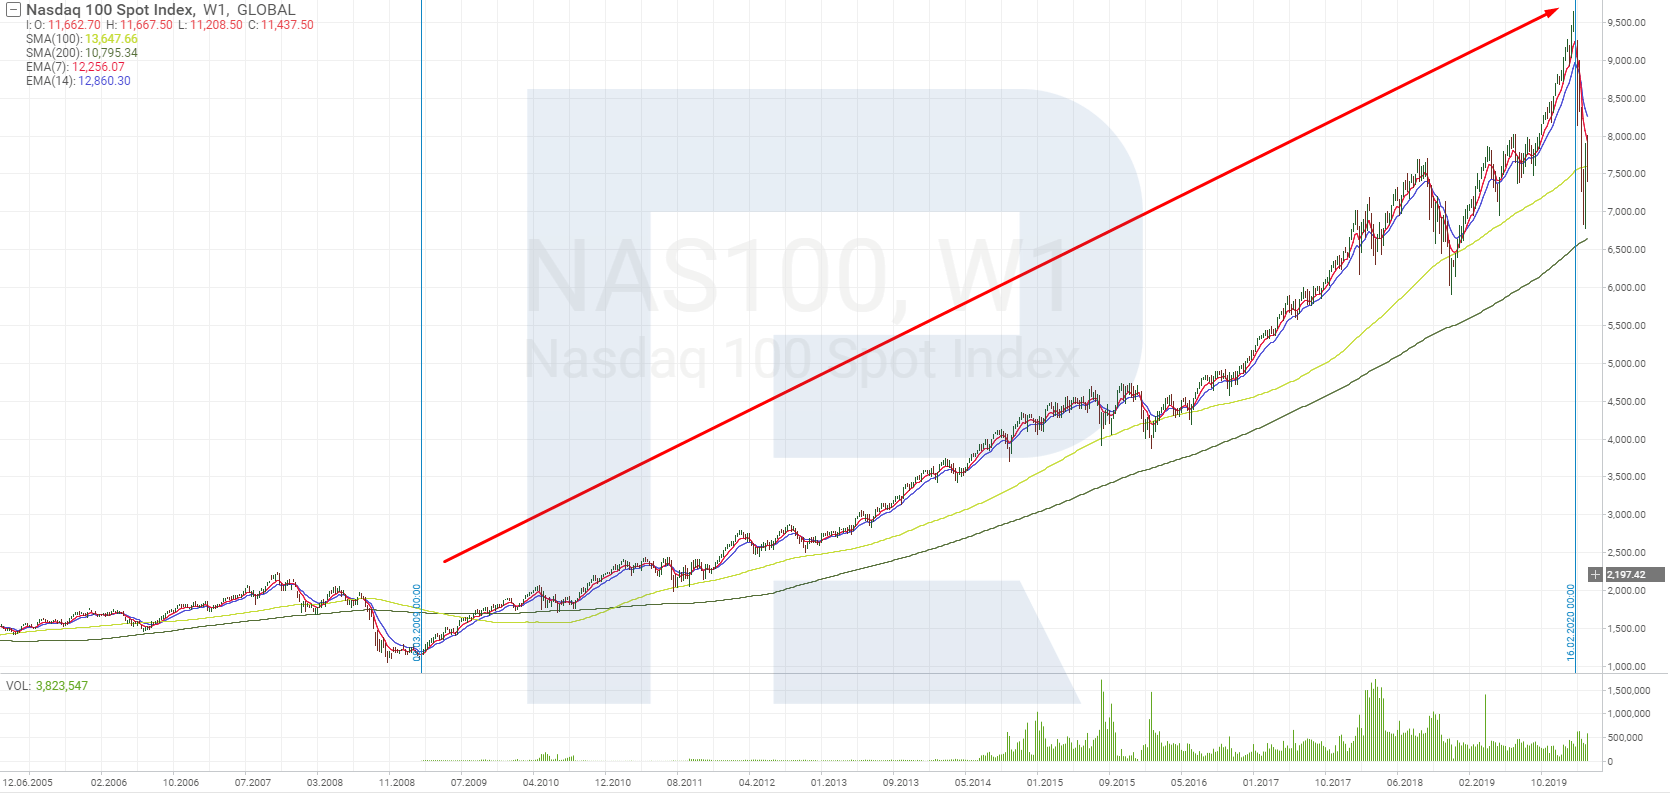 Зростання індексу Nasdaq 100 на "бичачому ринку" з 2009 до 2020 року включно